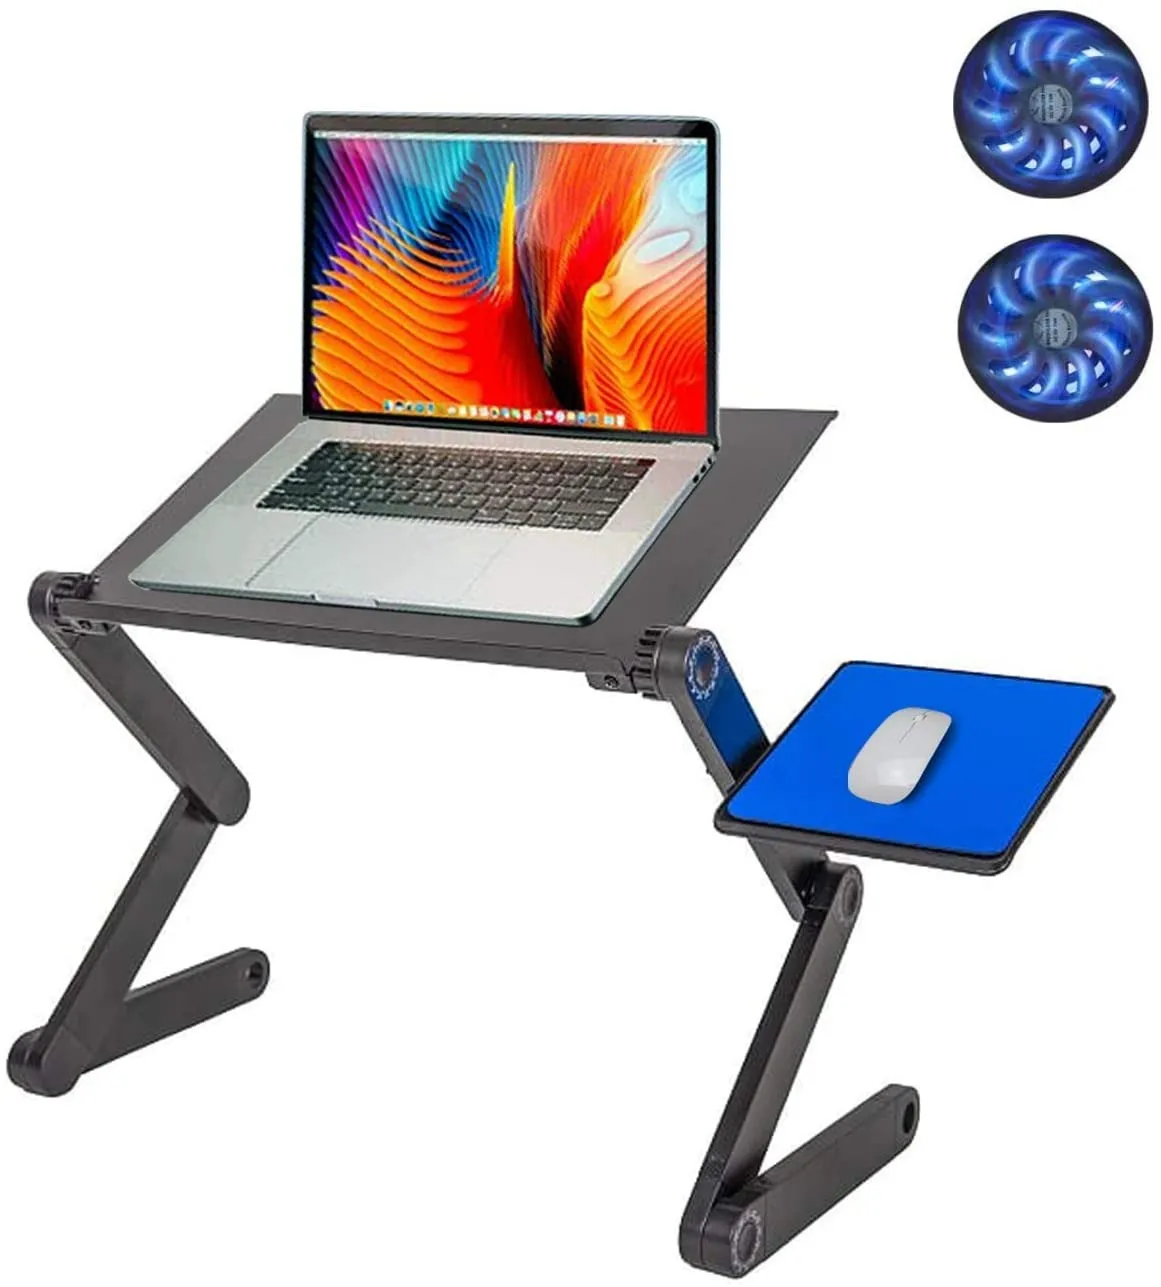 Justerbar bärbar datorkylställning Lap Desk för sängbäddsoffa W / Musmatta Ergonomisk höjdvinkel Tilt Laptop Stand Couch Desktop Tray Portable MacBook Pro